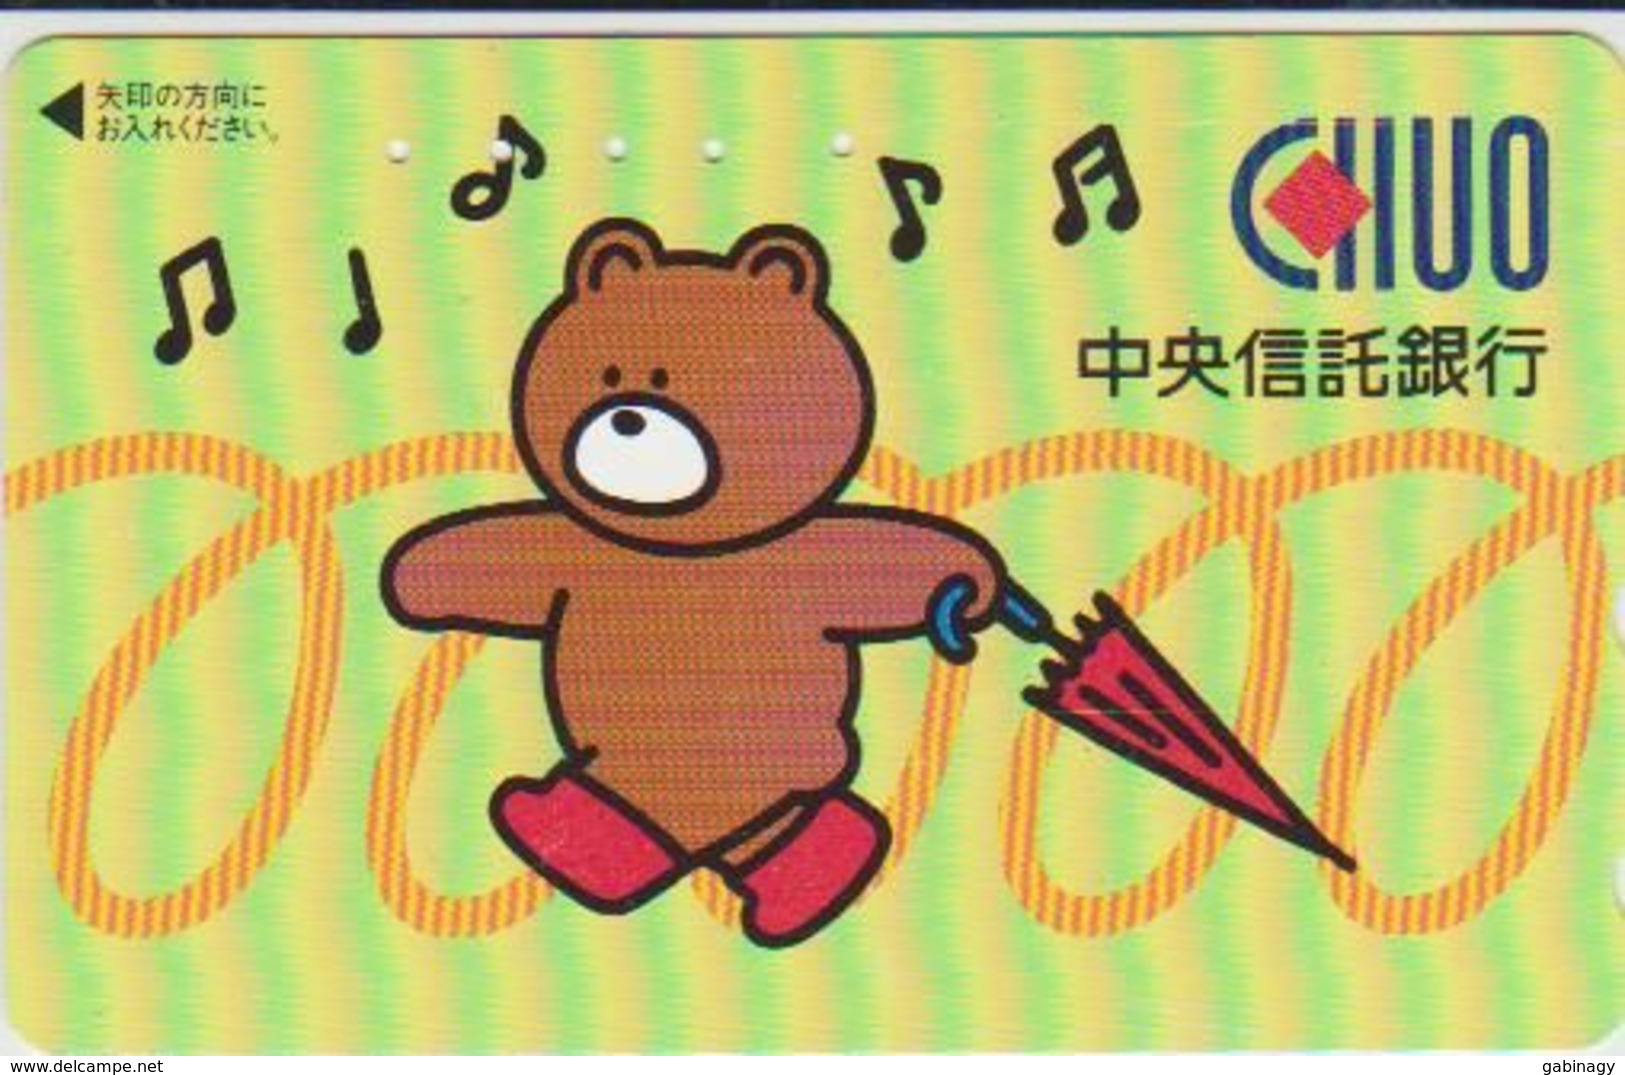 TEDDY BEAR - JAPAN 016 - CARTOON - 110-011 - Games